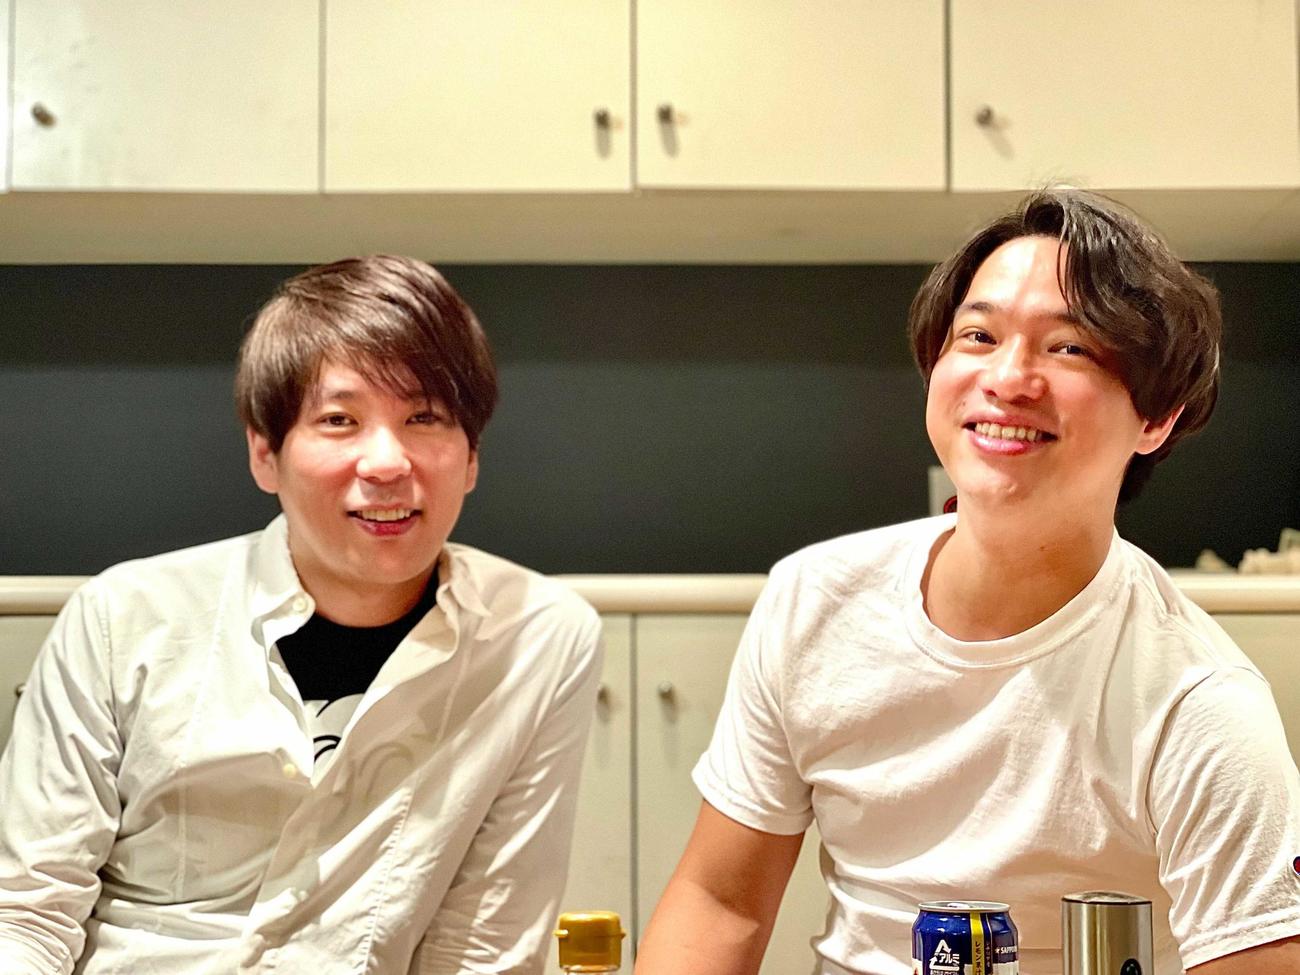 「株式会社OMATSURI」を設立し代表取締役に就任したことを発表した元ザブングル松尾陽介さん（左）と藤本隆太郎さん